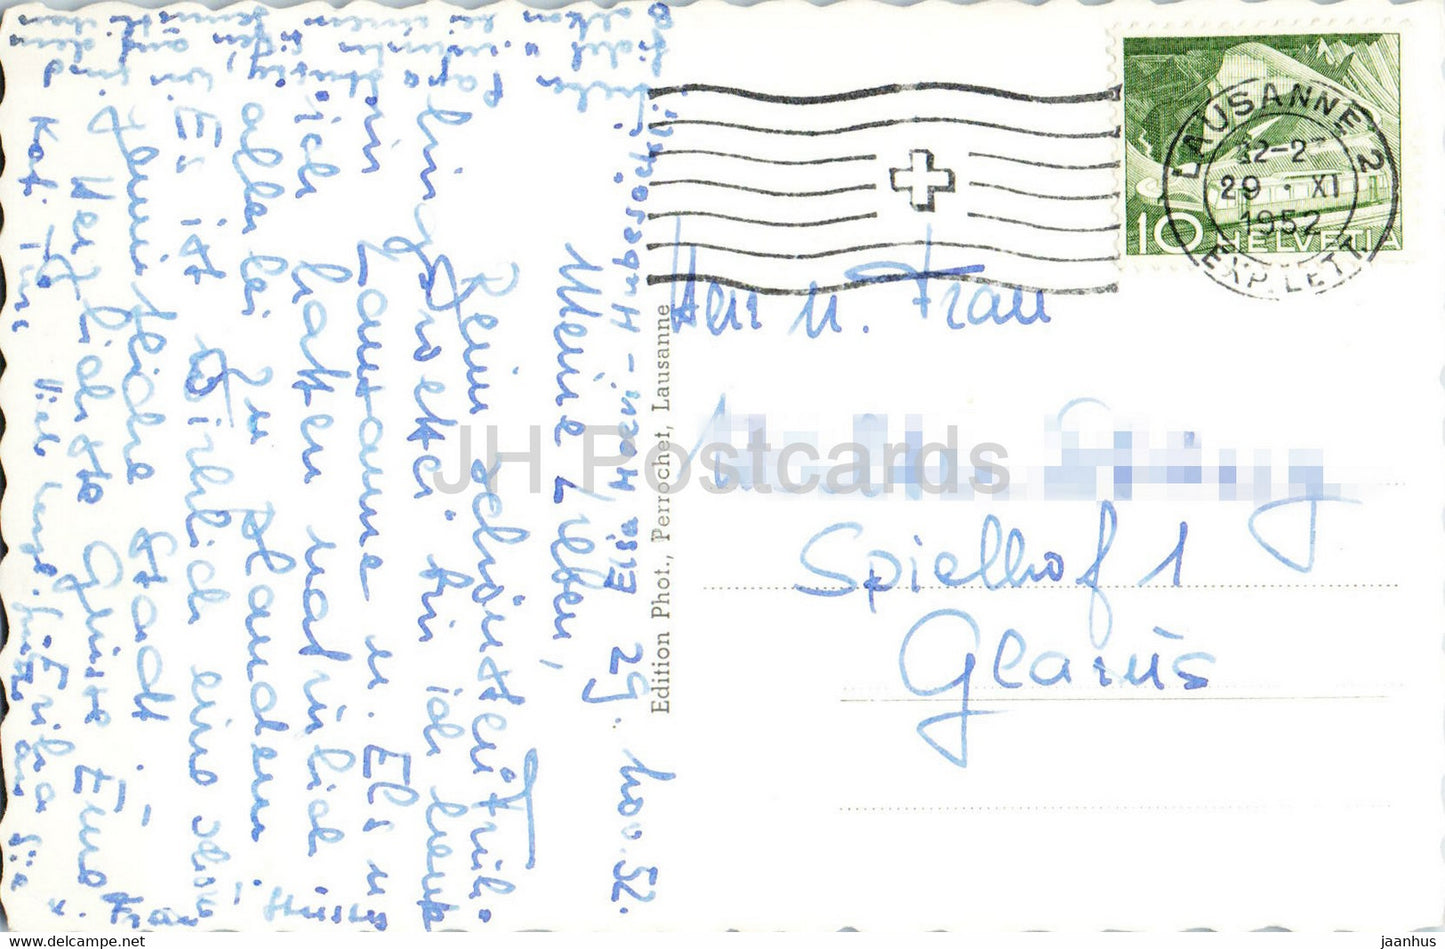 Lausanne et LEs Alpes – 7906 – alte Postkarte – 1941 – Schweiz – gebraucht